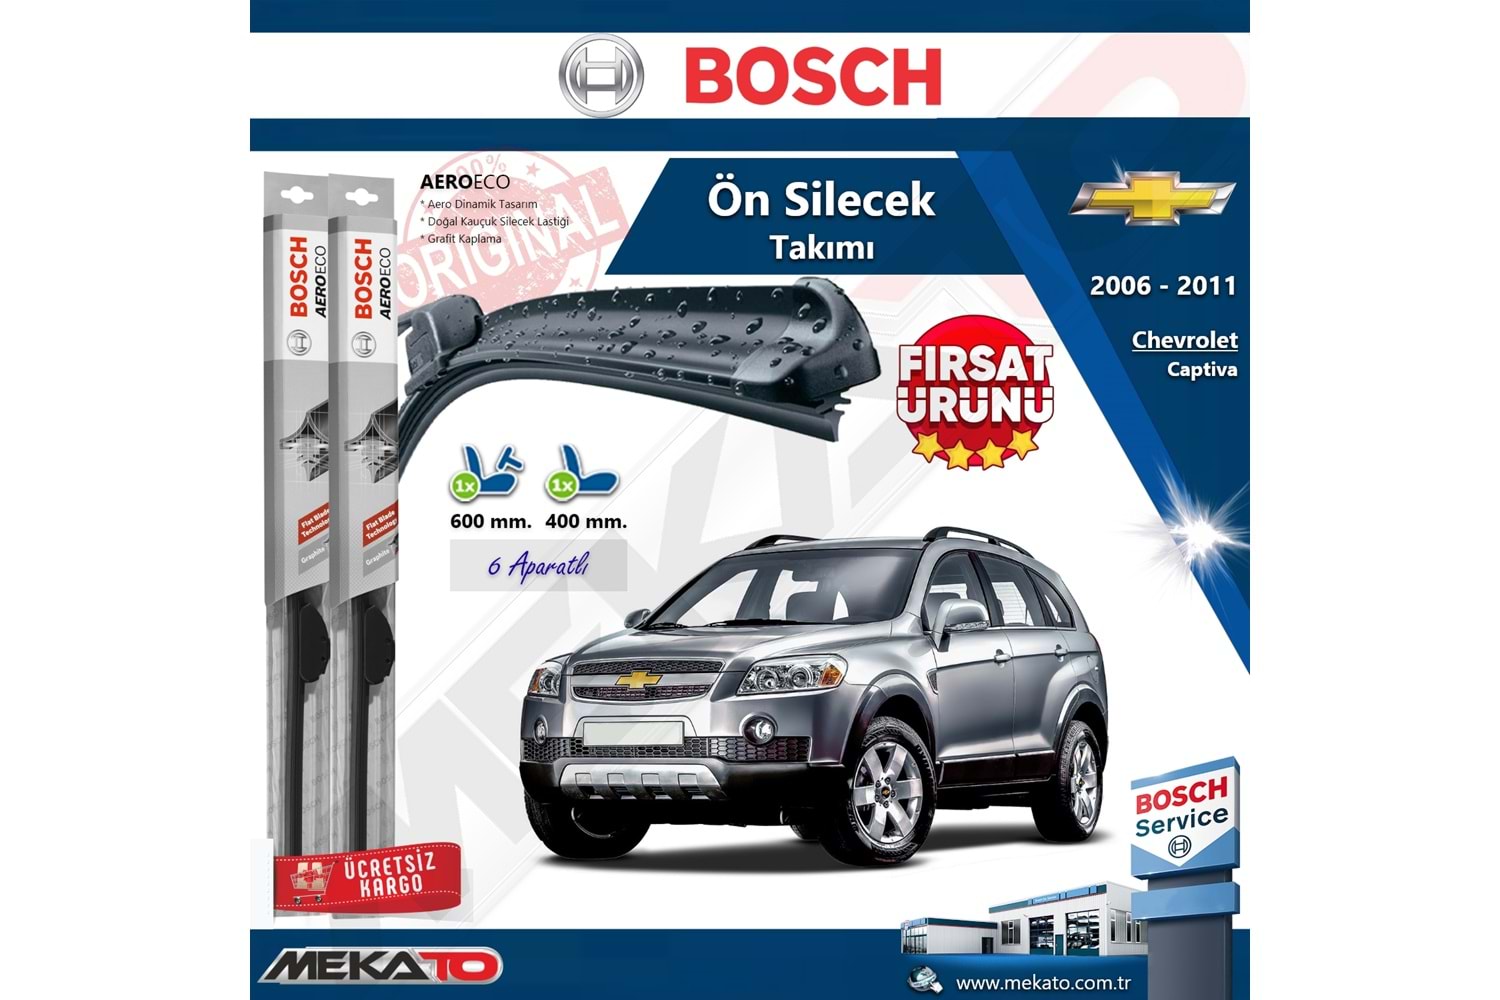 Chevrolet Captiva Ön Silecek Takımı Bosch Aero Eco 2006-2011